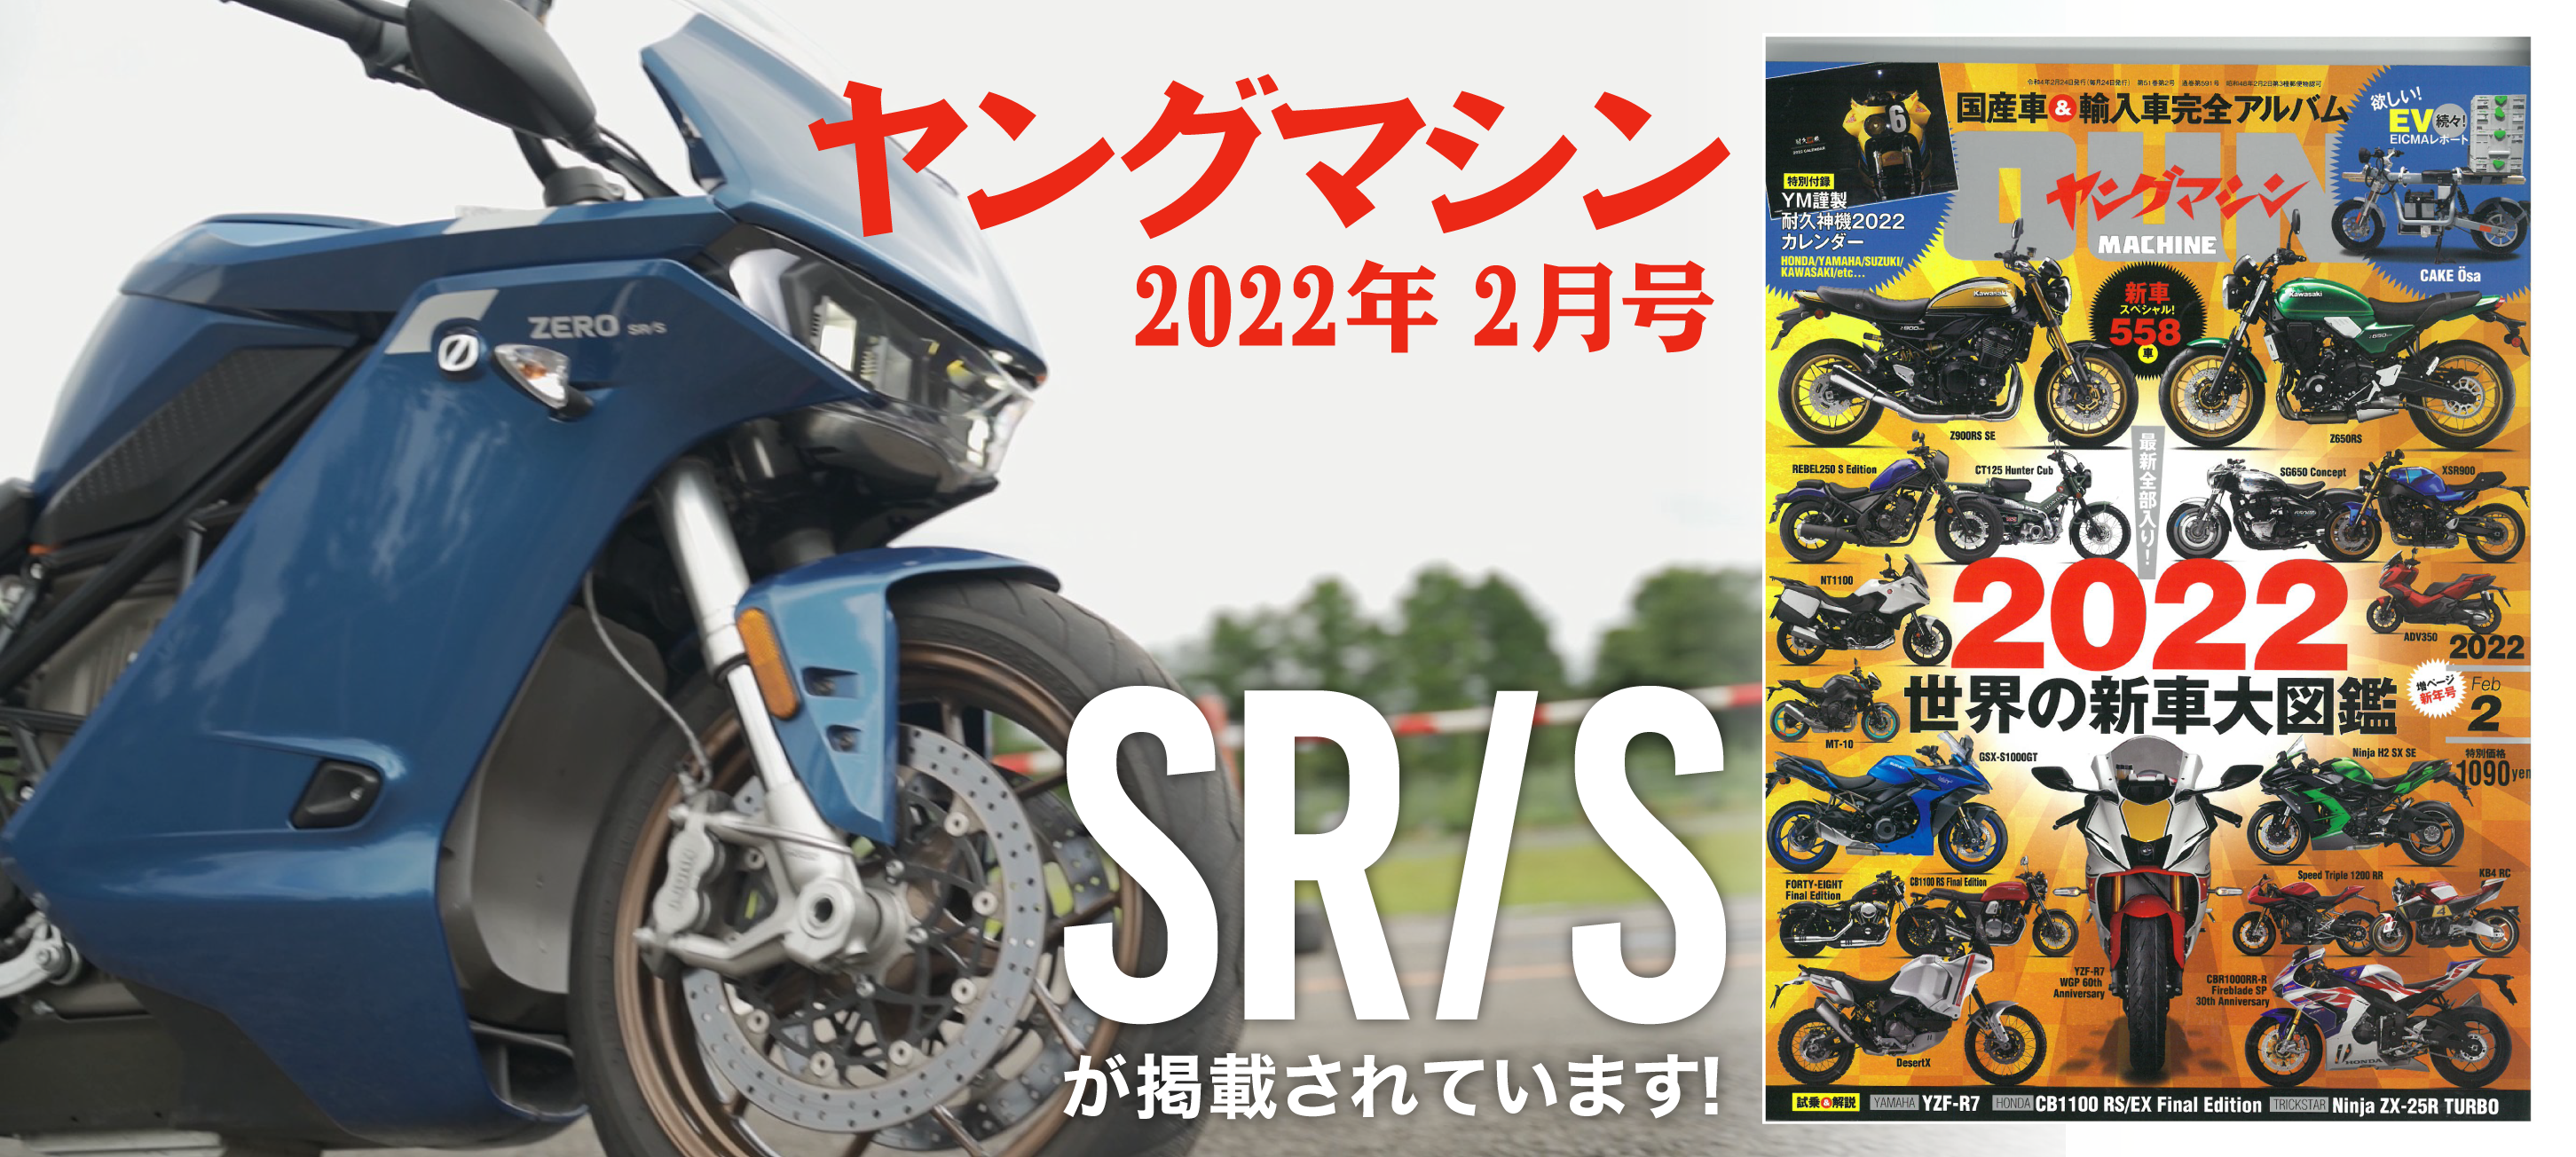 ヤングマシン2月号にZERO MOTORCYCLES SR/S が掲載されています